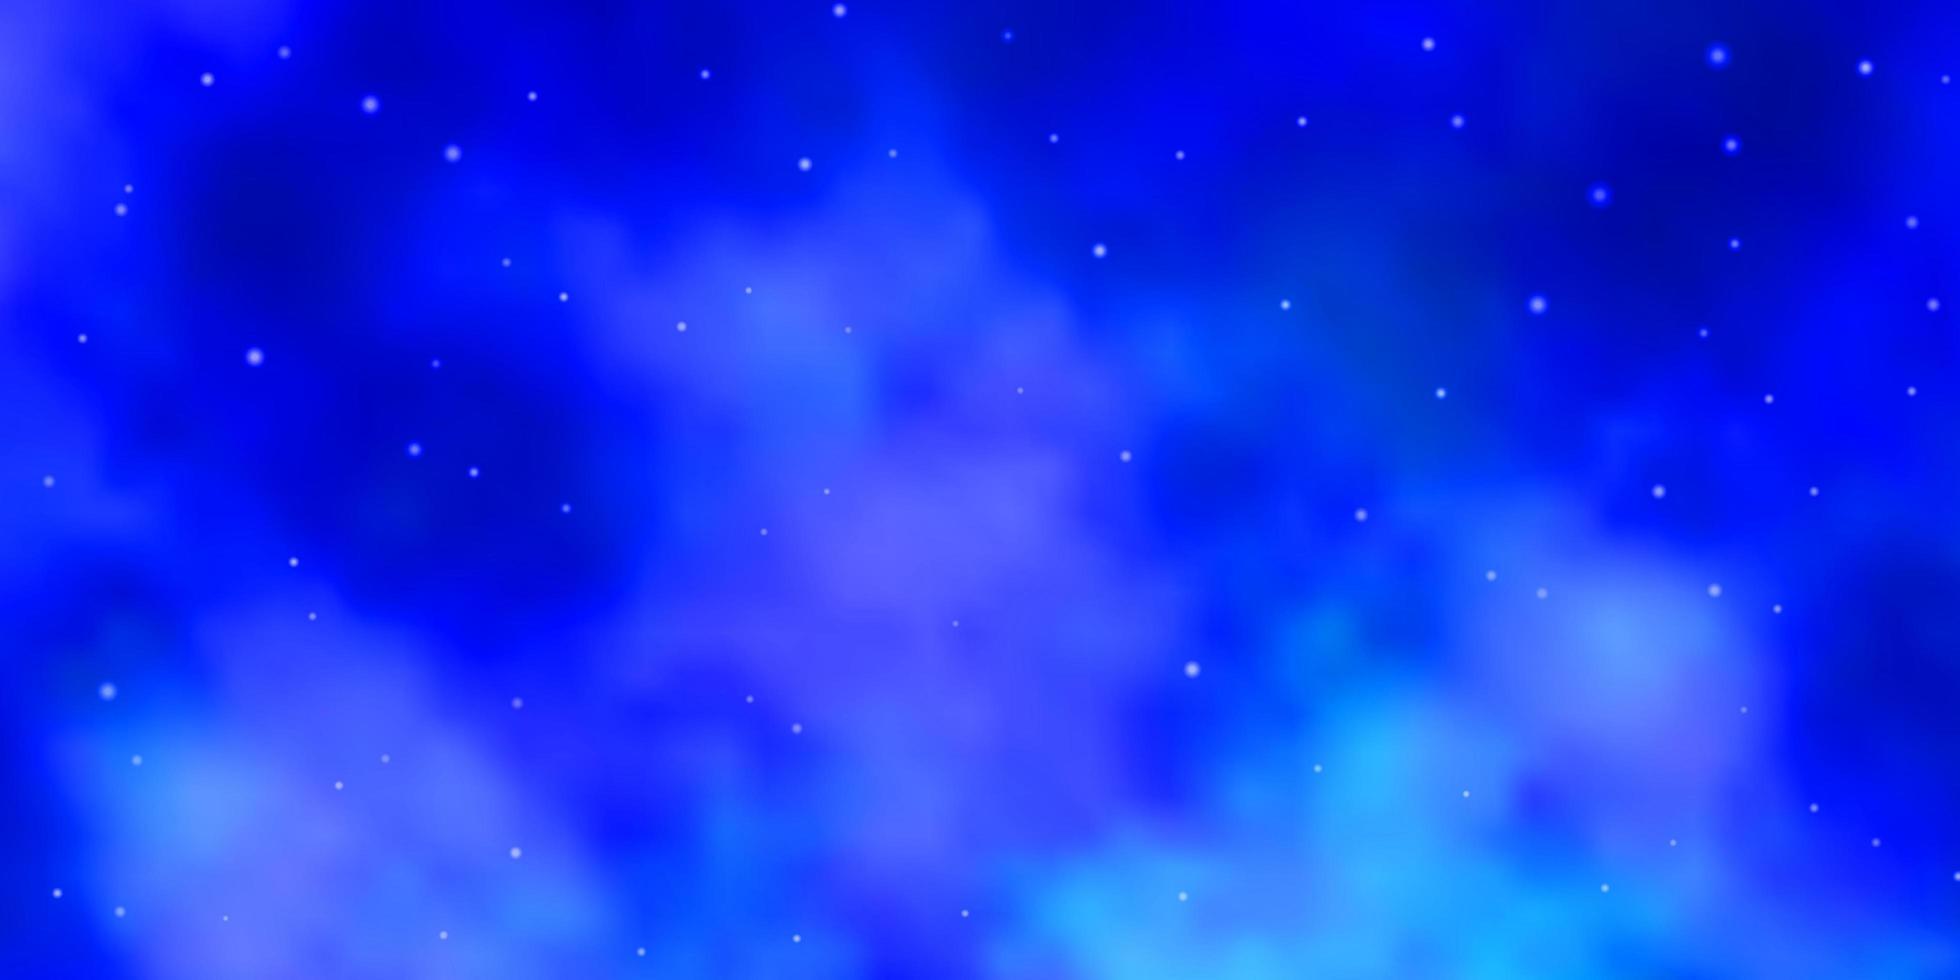 fond de vecteur bleu clair avec des étoiles colorées.